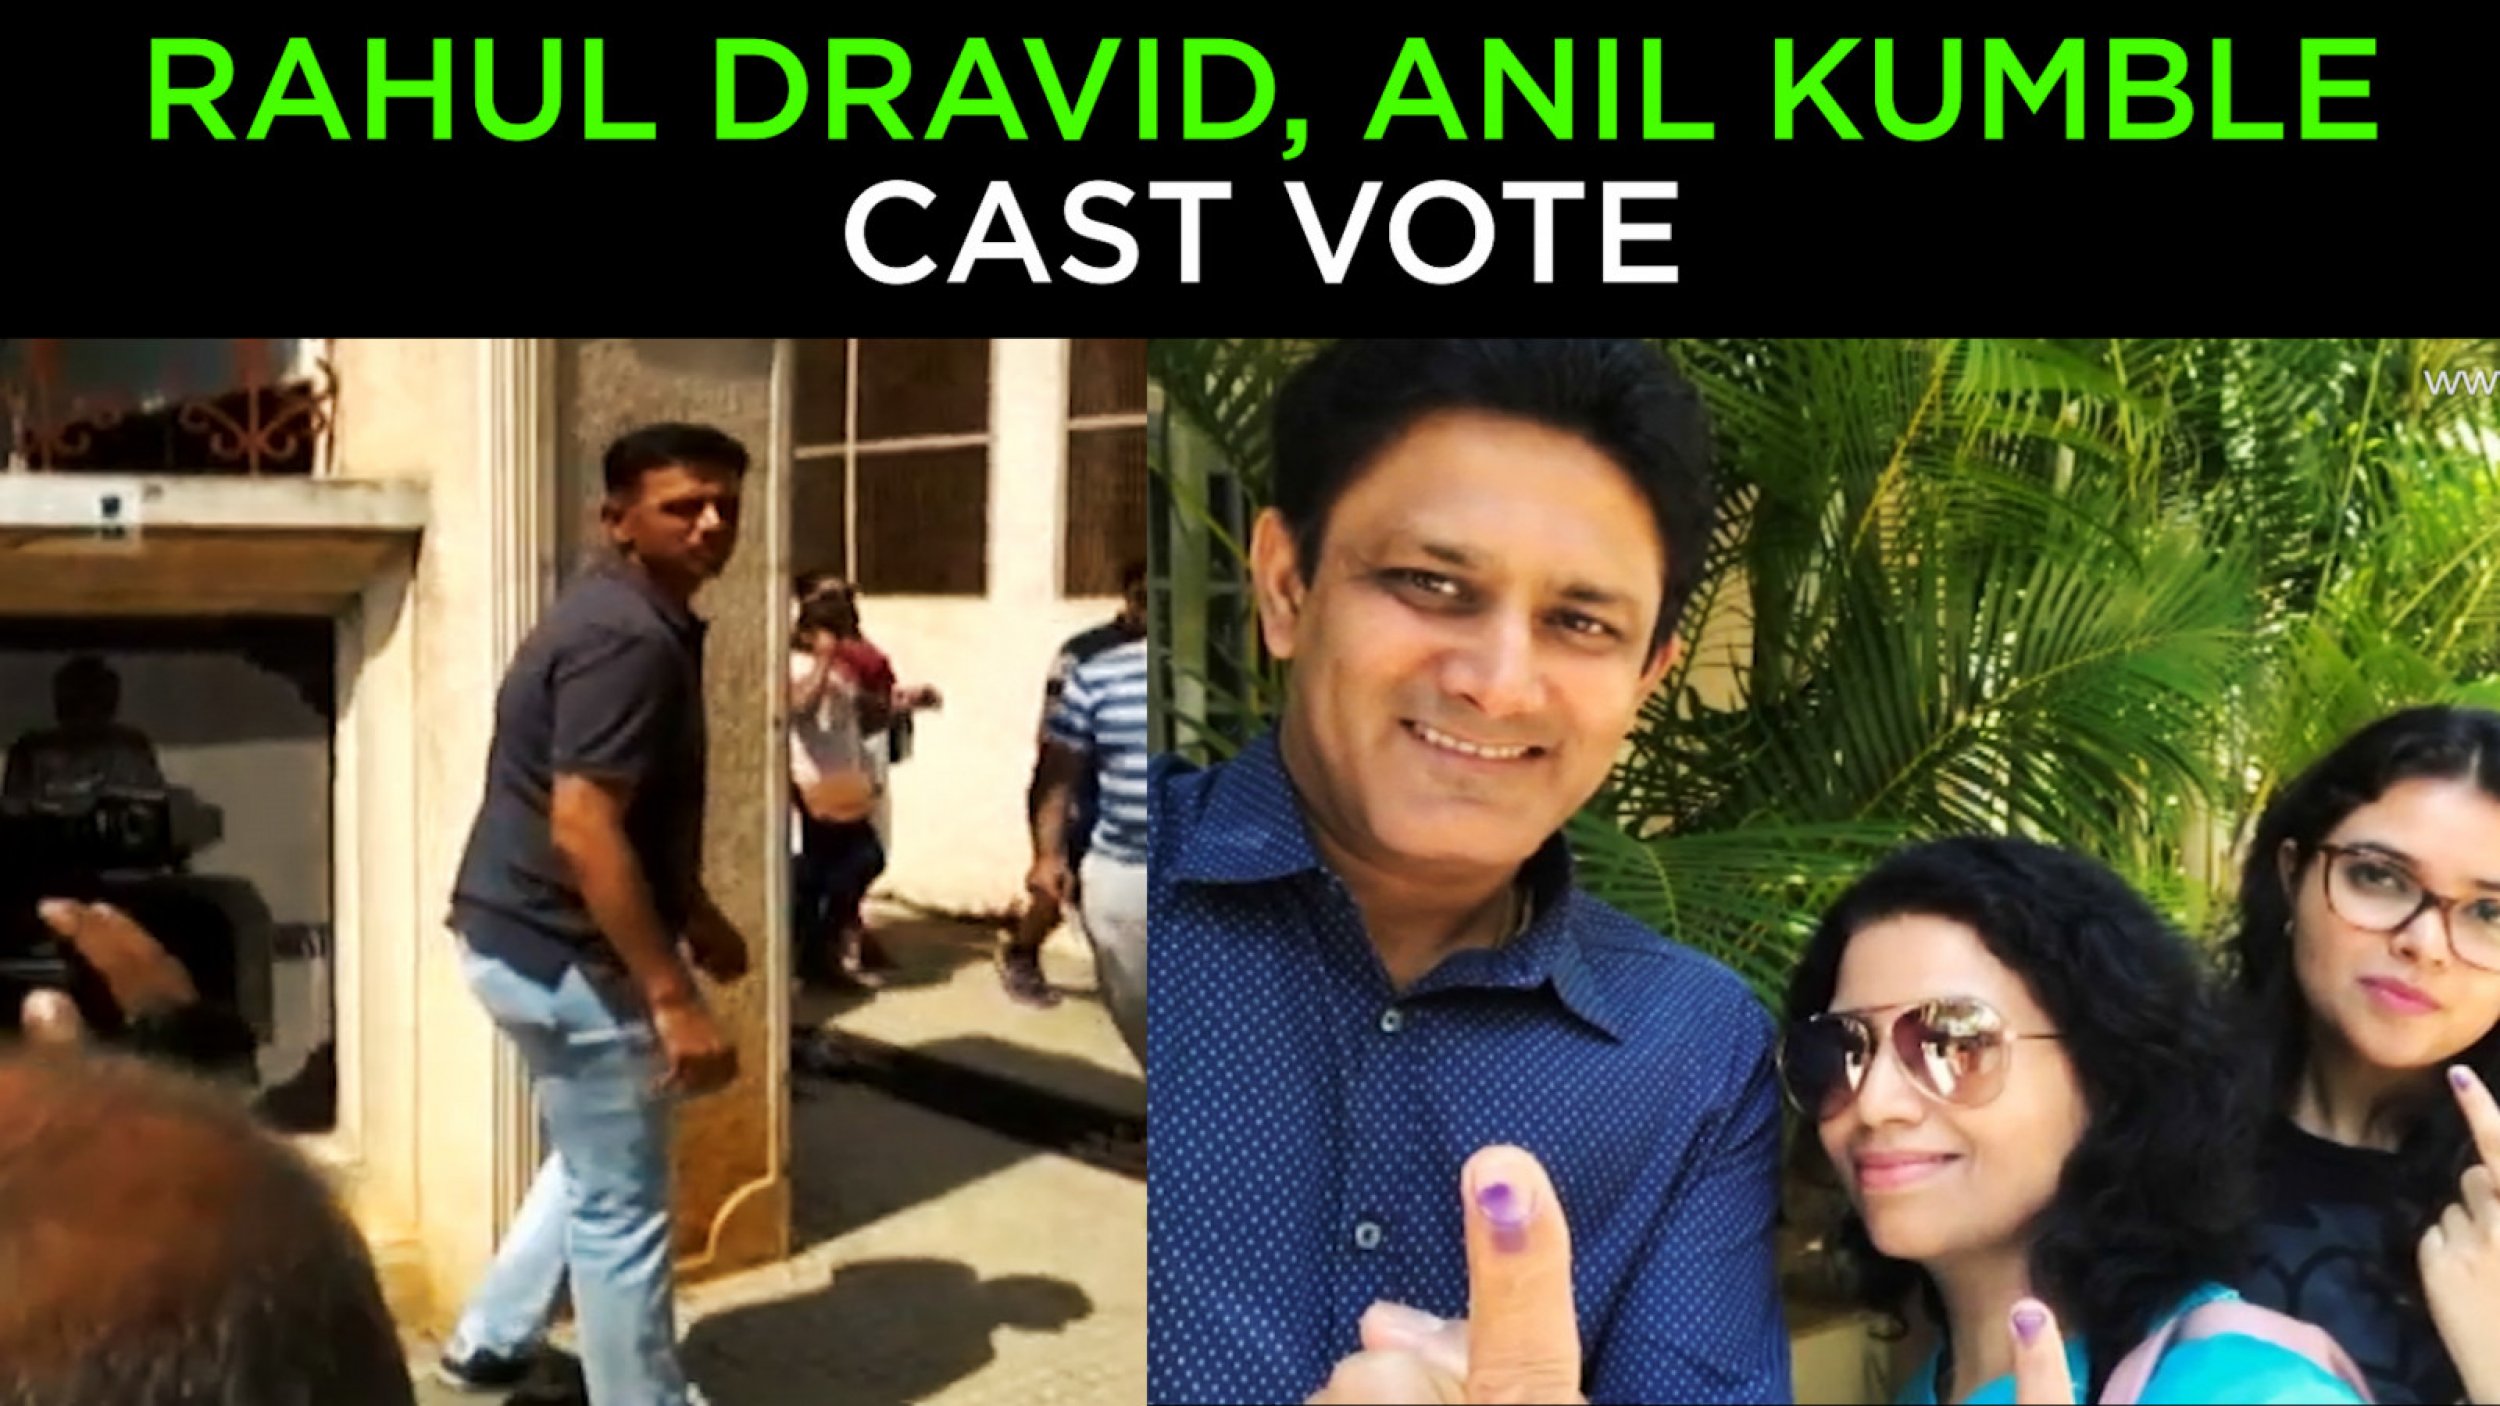 Rahul Dravid, Anil Kumble cast vote